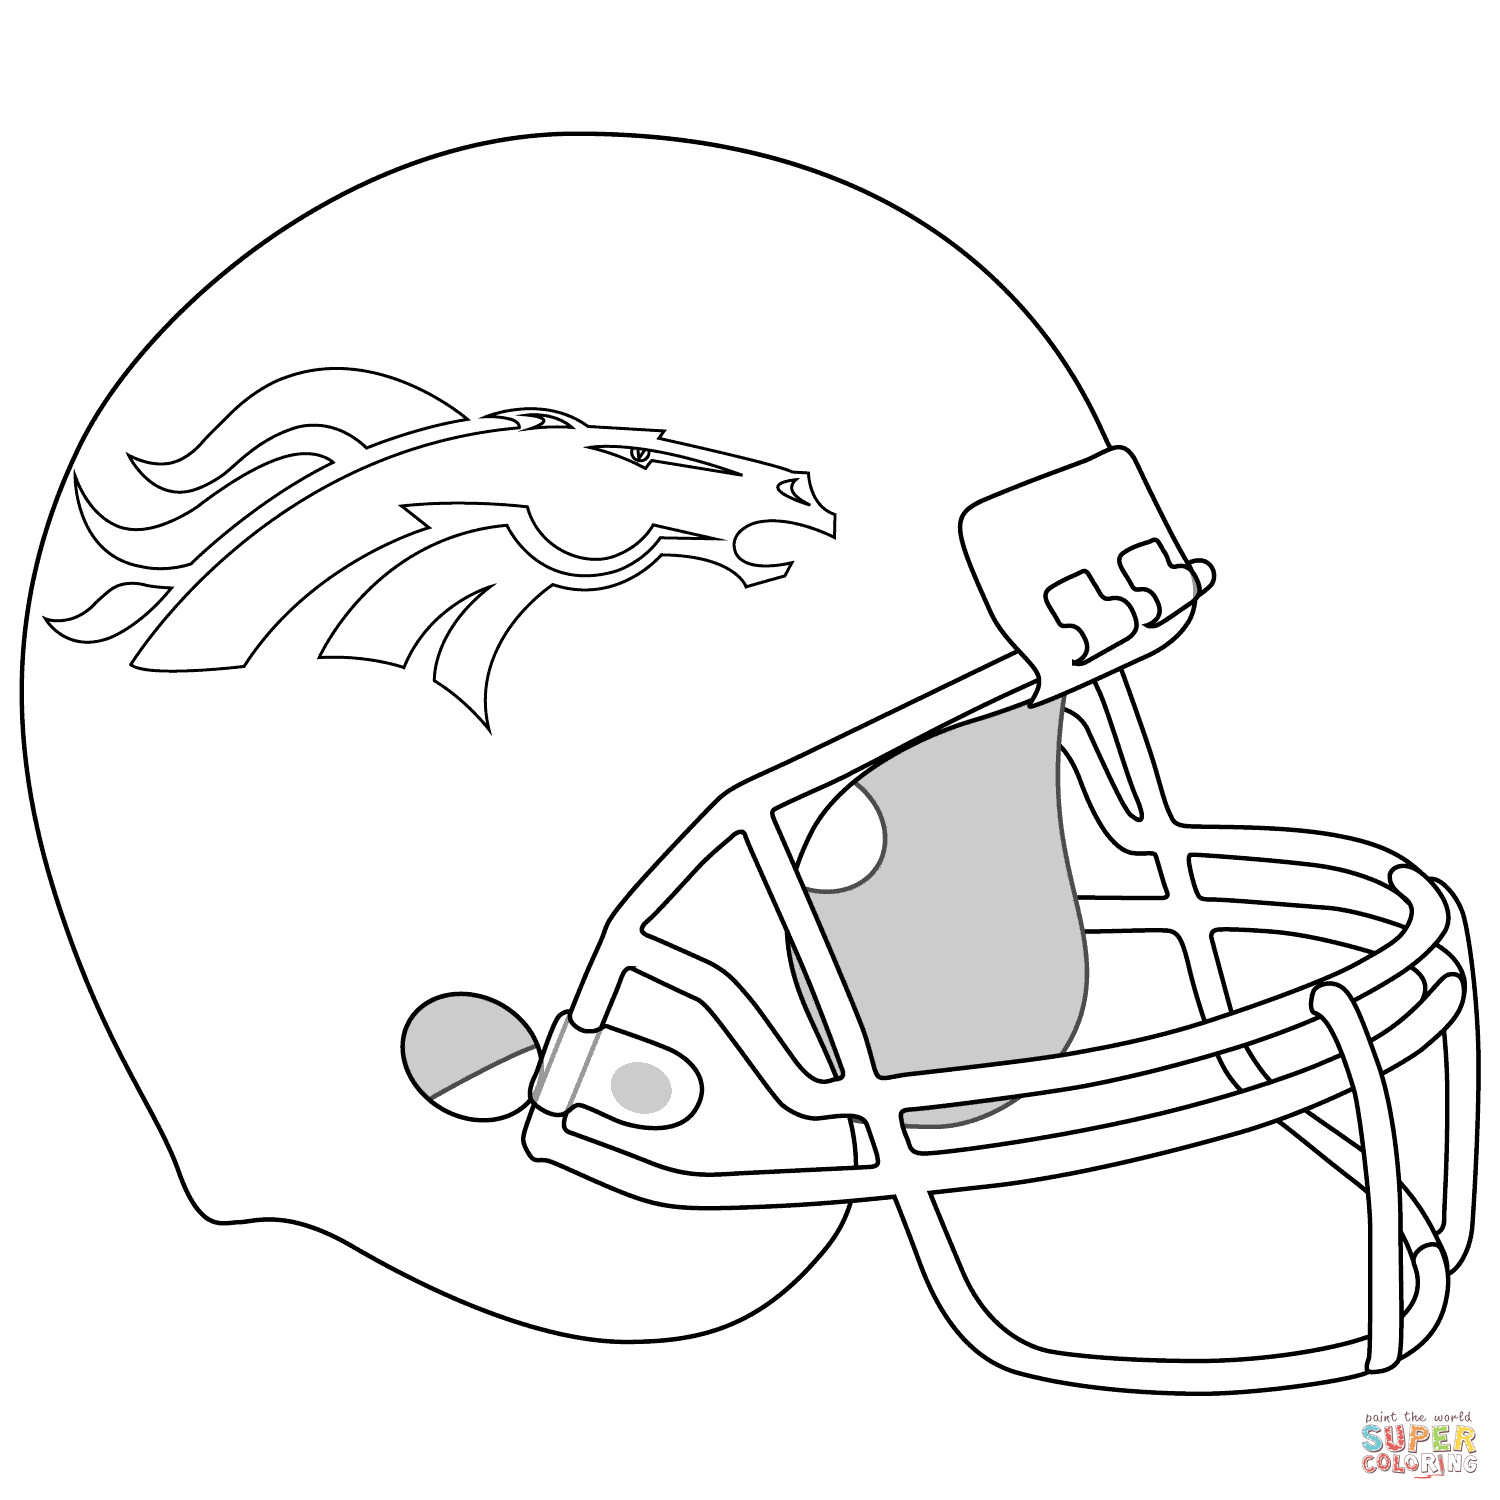 Denver Broncos Coloring Pages
 Coloriage Casque de Broncos de Denver